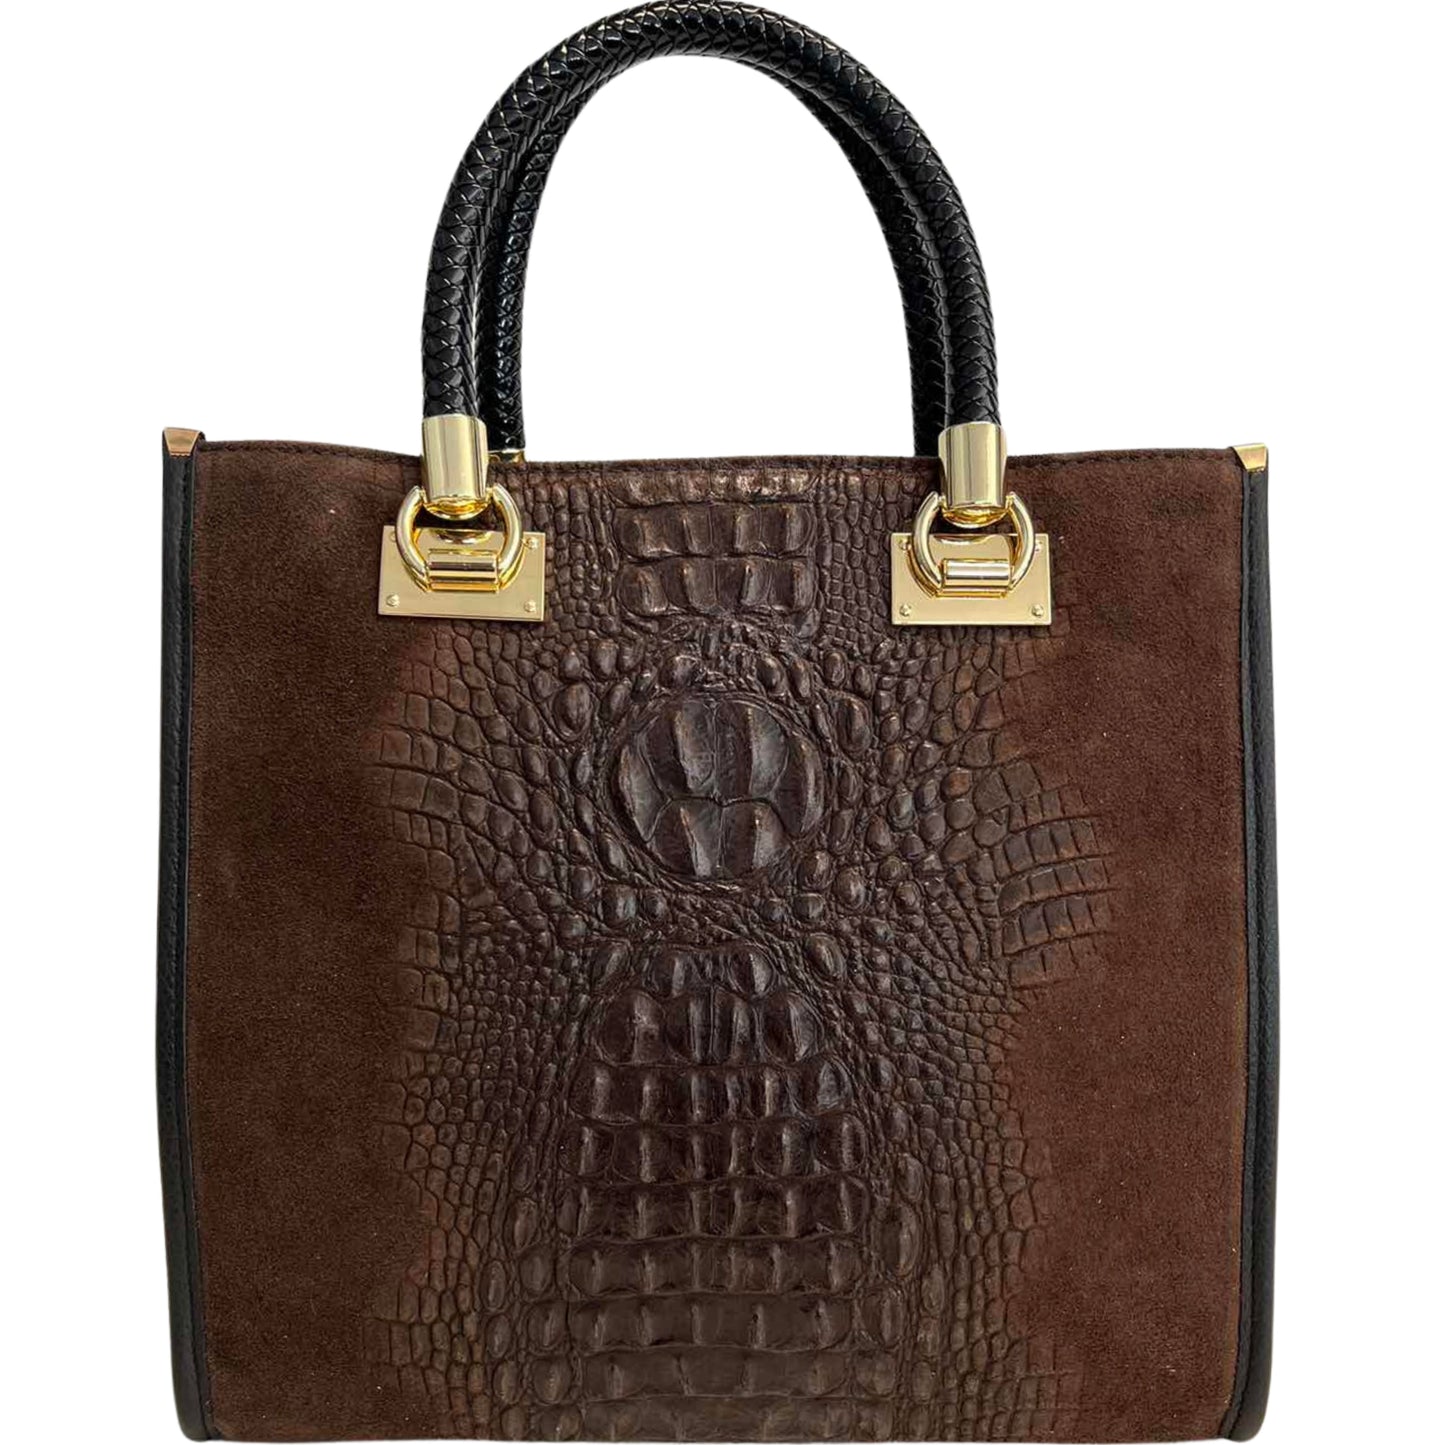 Modarno Woman shoulder bag - handbag in crocodile print suede leather